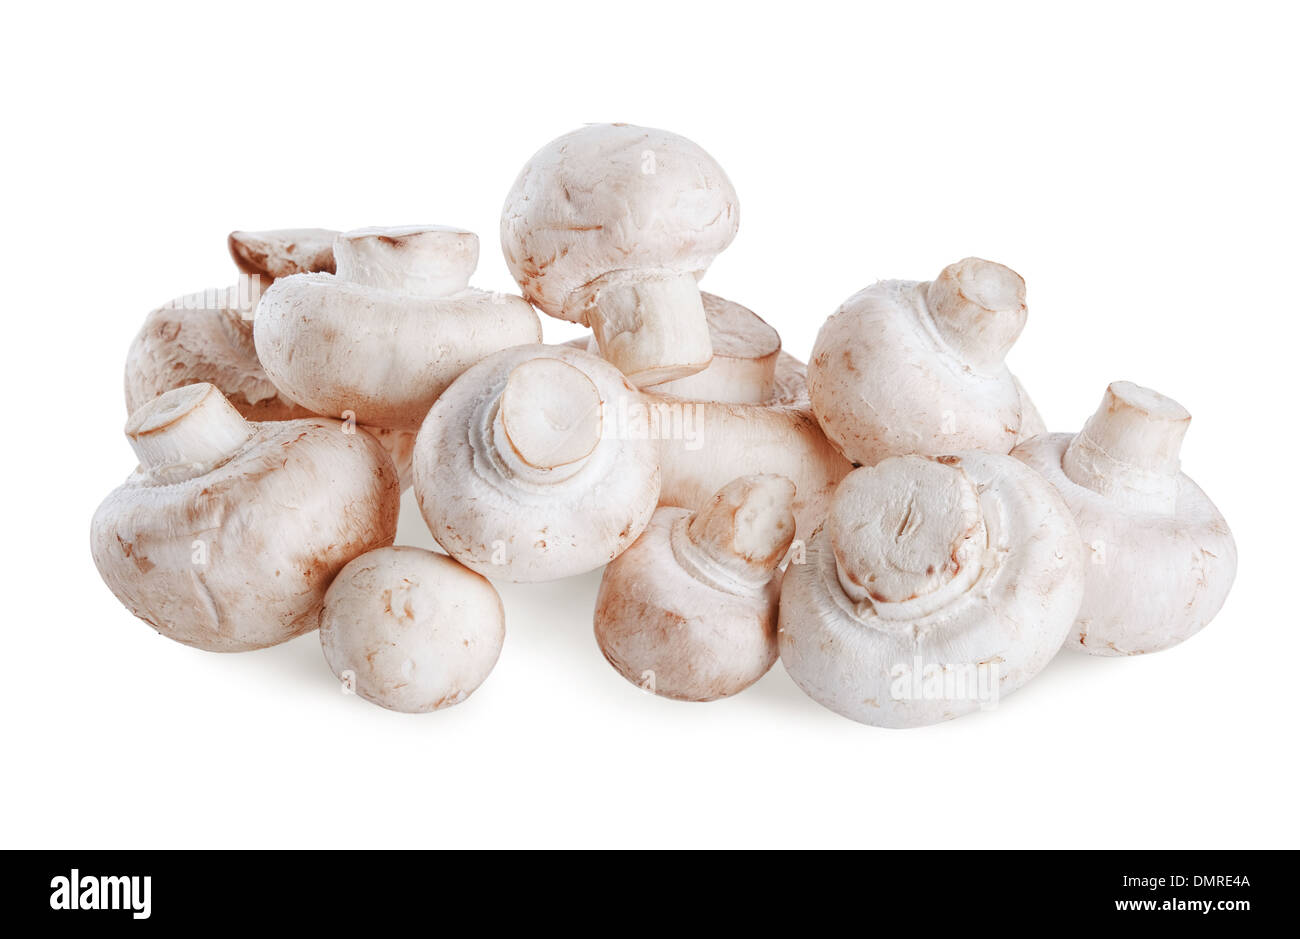 white fresh mushrooms isolated on white background Stock Photo